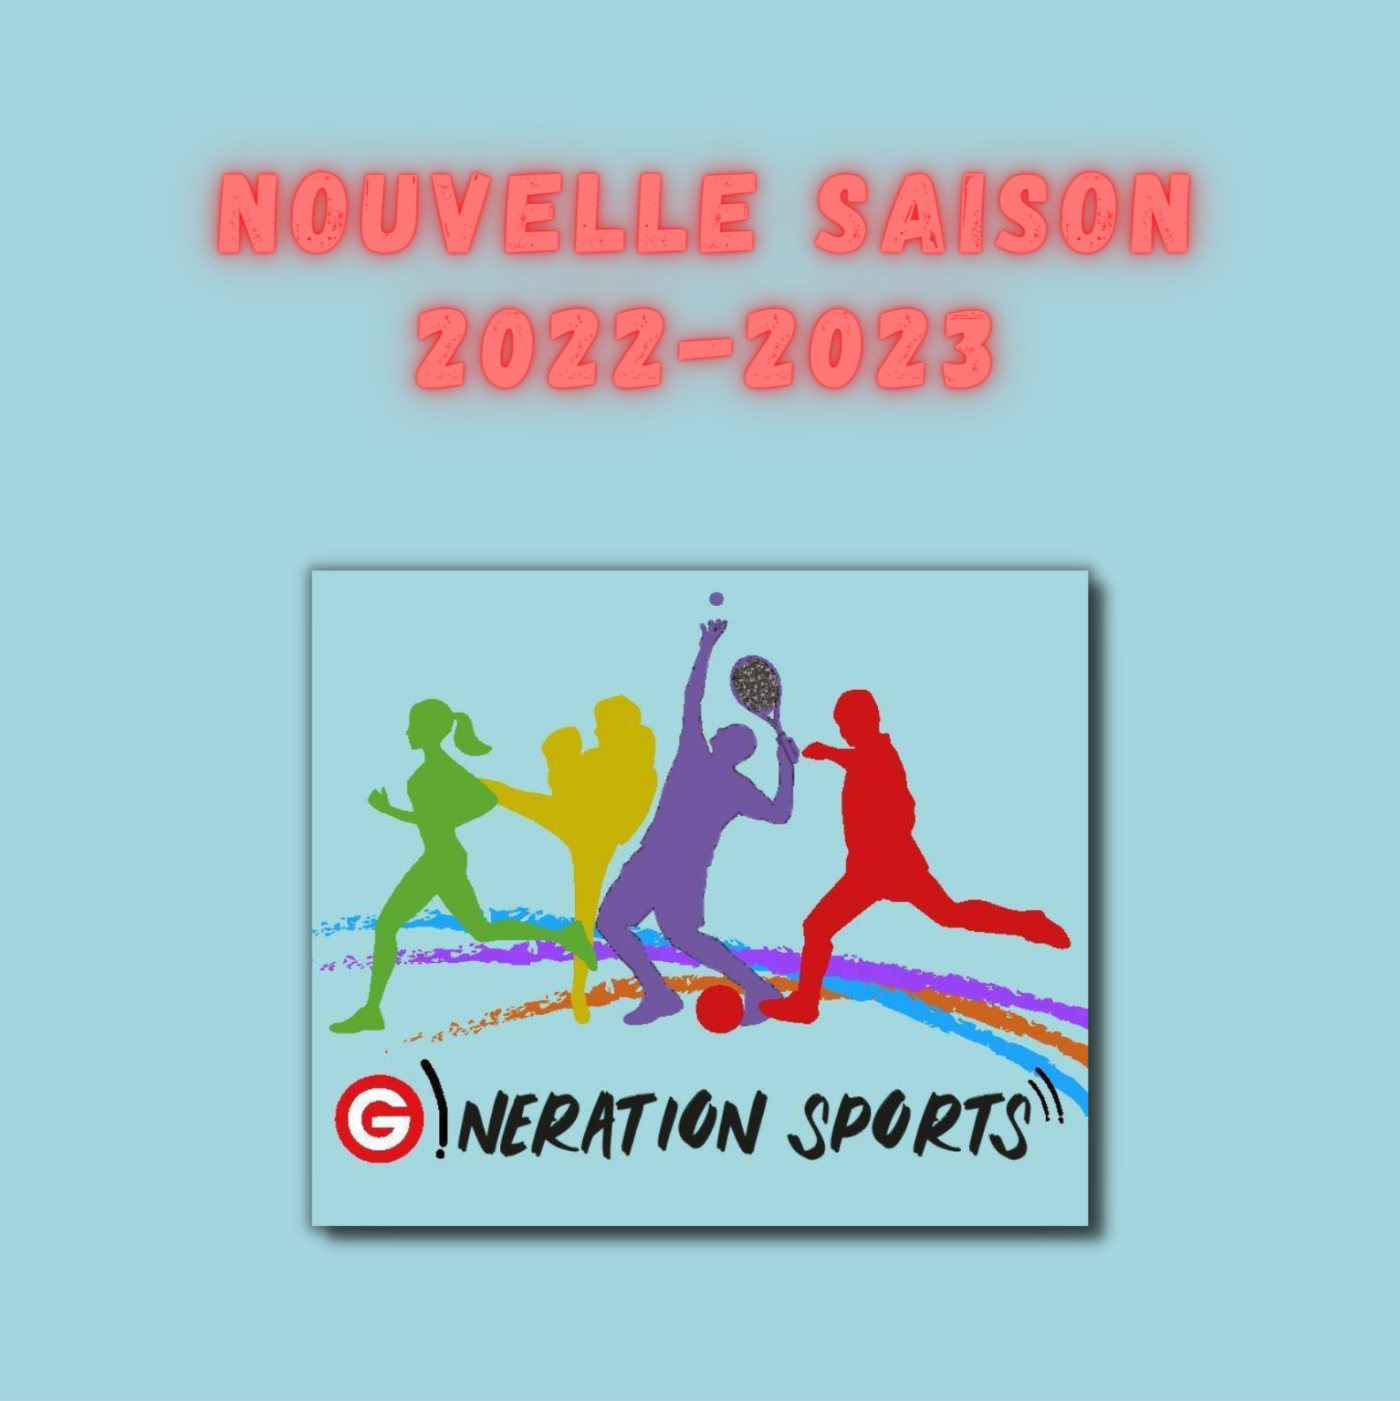 Emission sportive locale et nationale G!nération sports du 06 09 2022